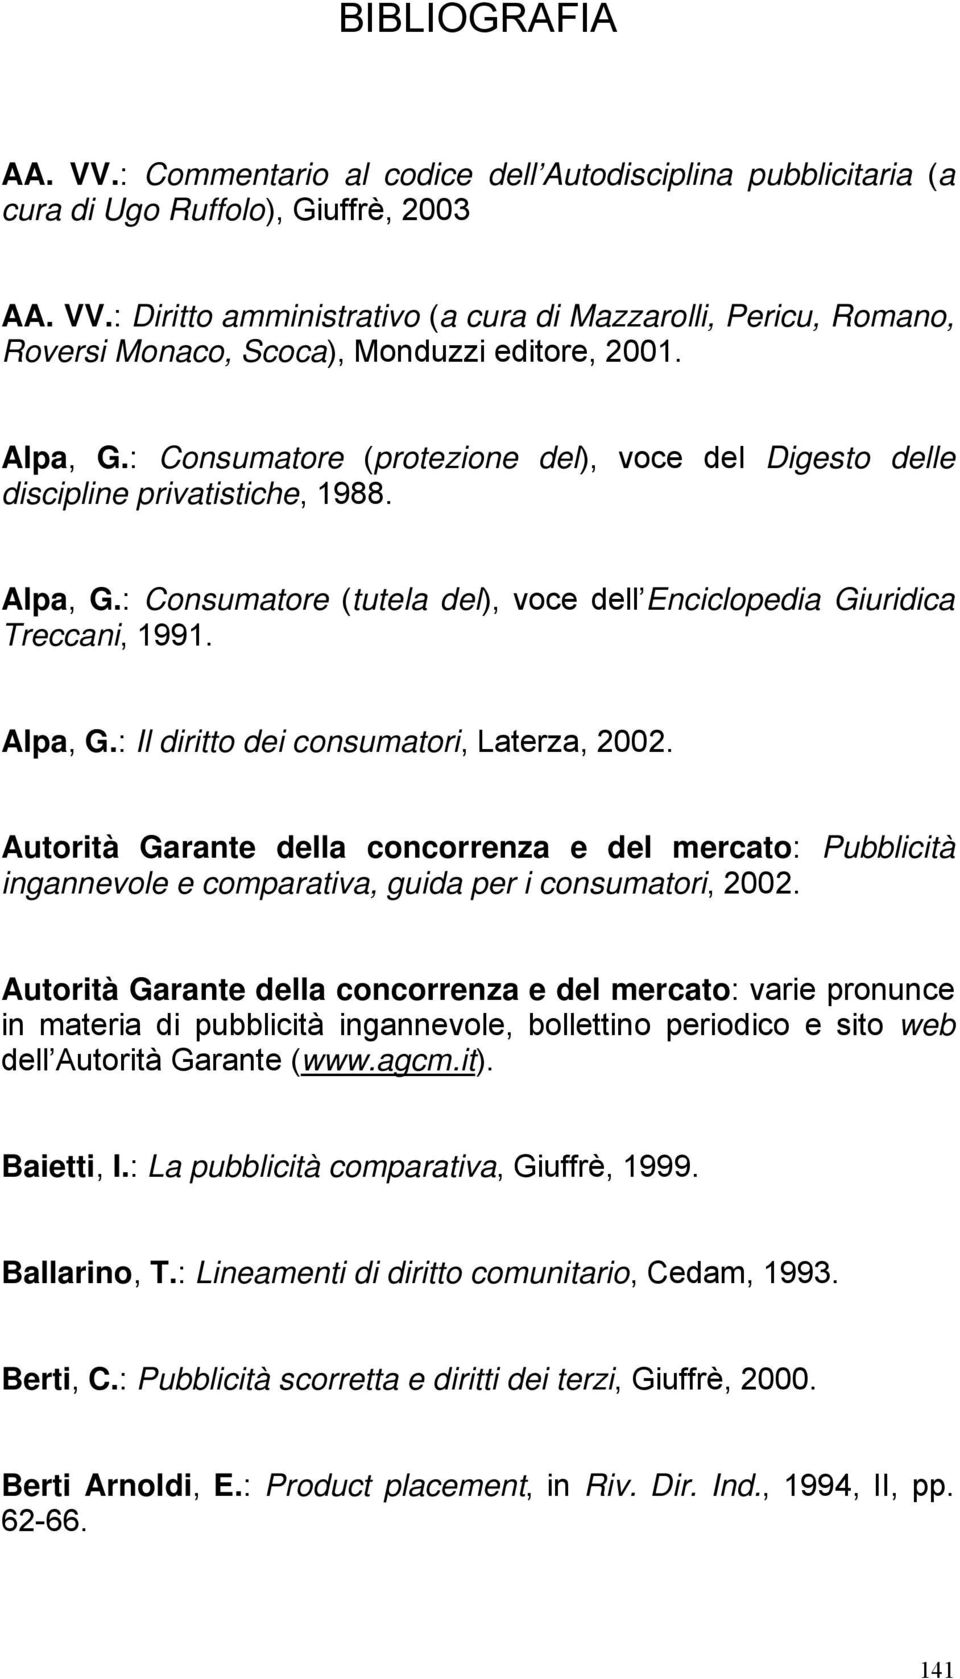 Autorità Garante della concorrenza e del mercato: Pubblicità ingannevole e comparativa, guida per i consumatori, 2002.